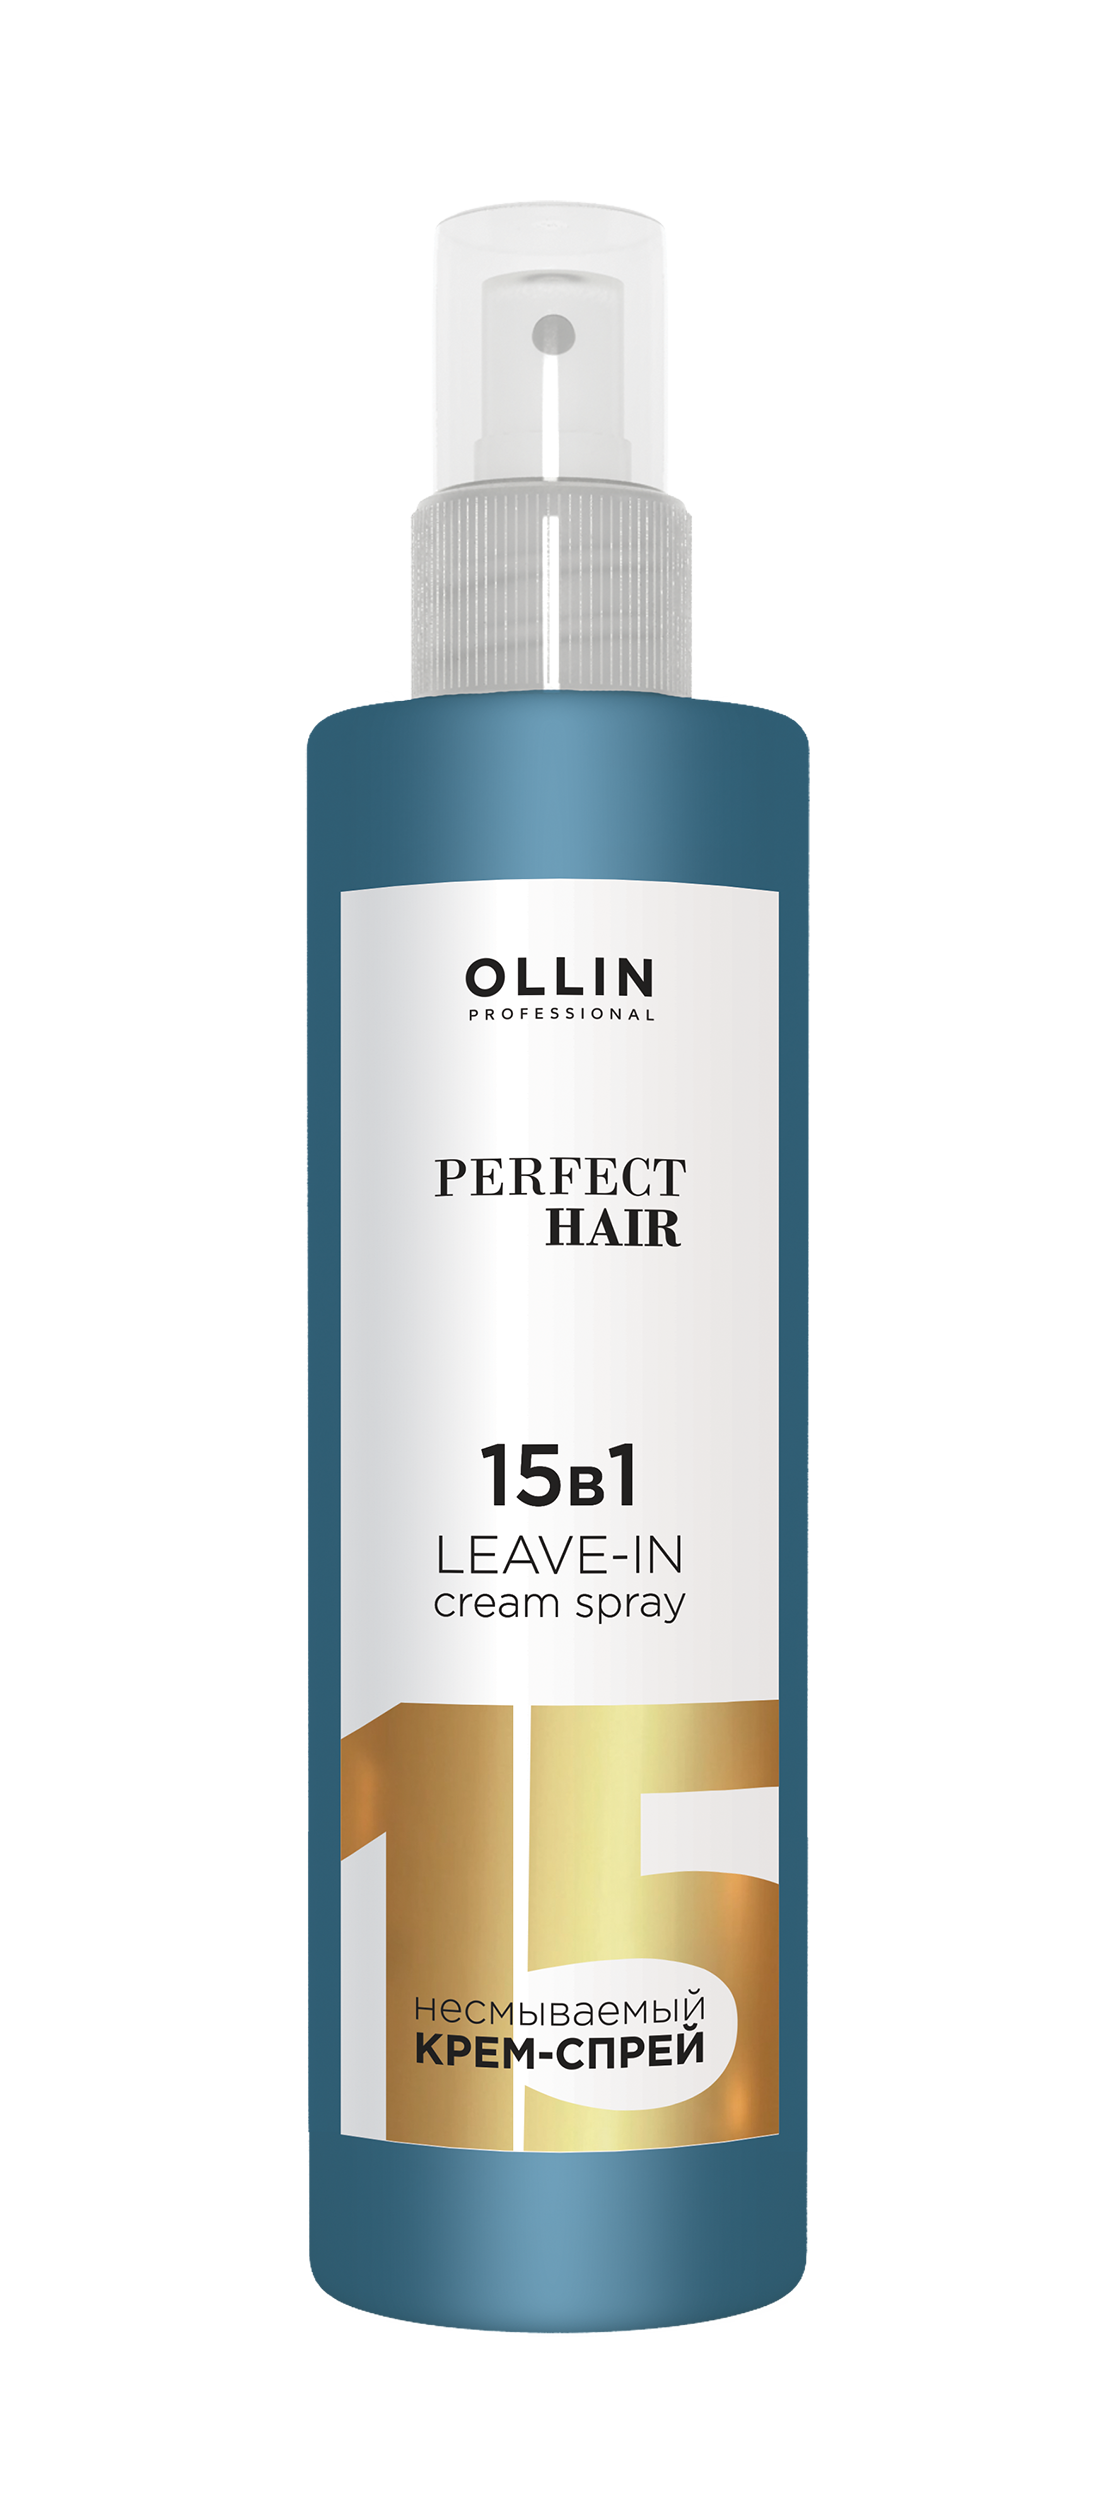 Несмываемый крем-спрей 15 в 1 OLLIN PERFECT HAIR, 250мл